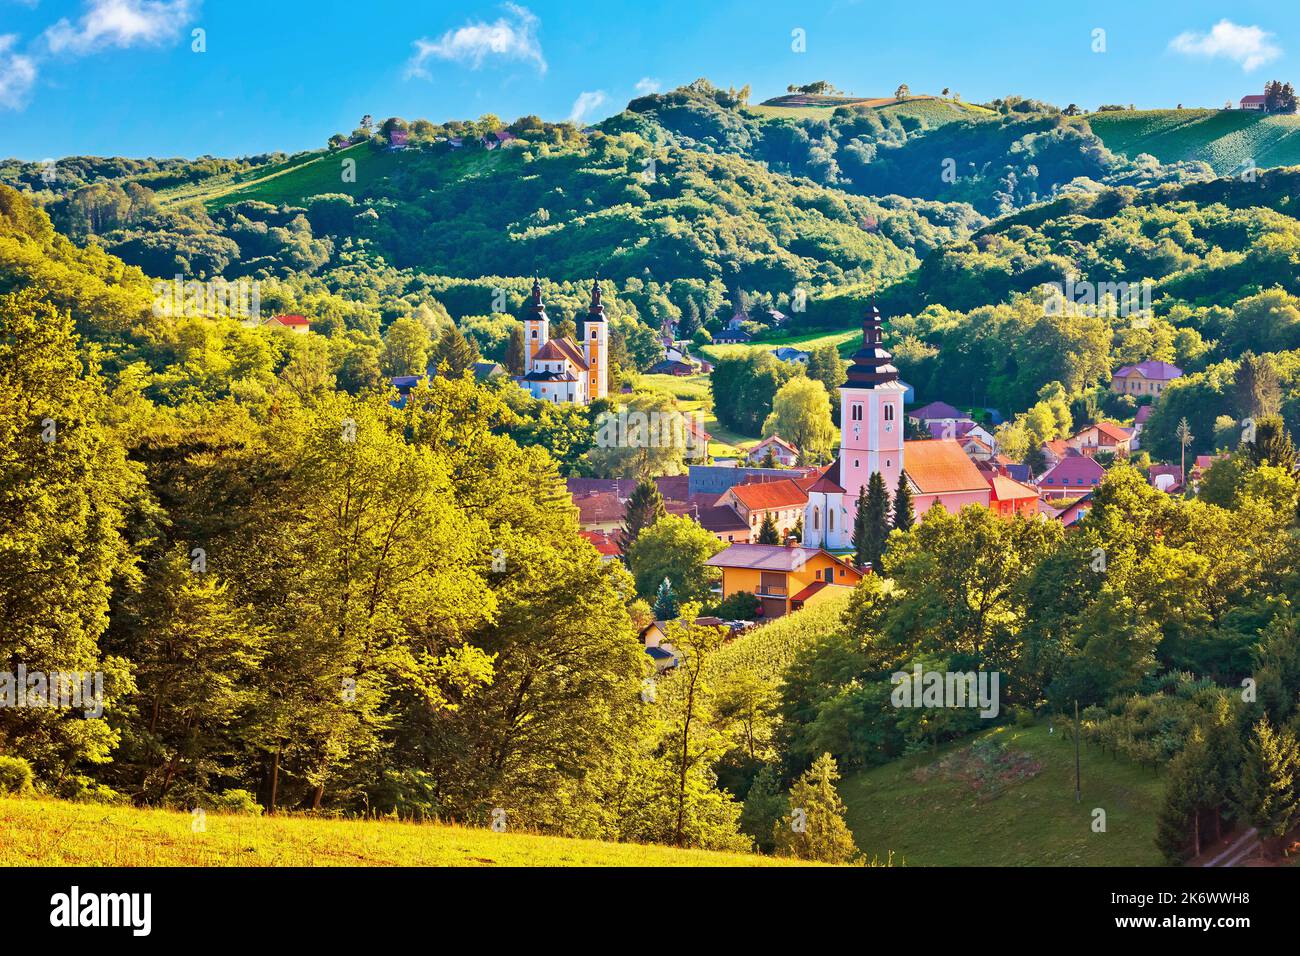 Dorf Strigova grüne Landschaft Hügel Blick, Medjimurje Region im Norden Kroatiens Stockfoto